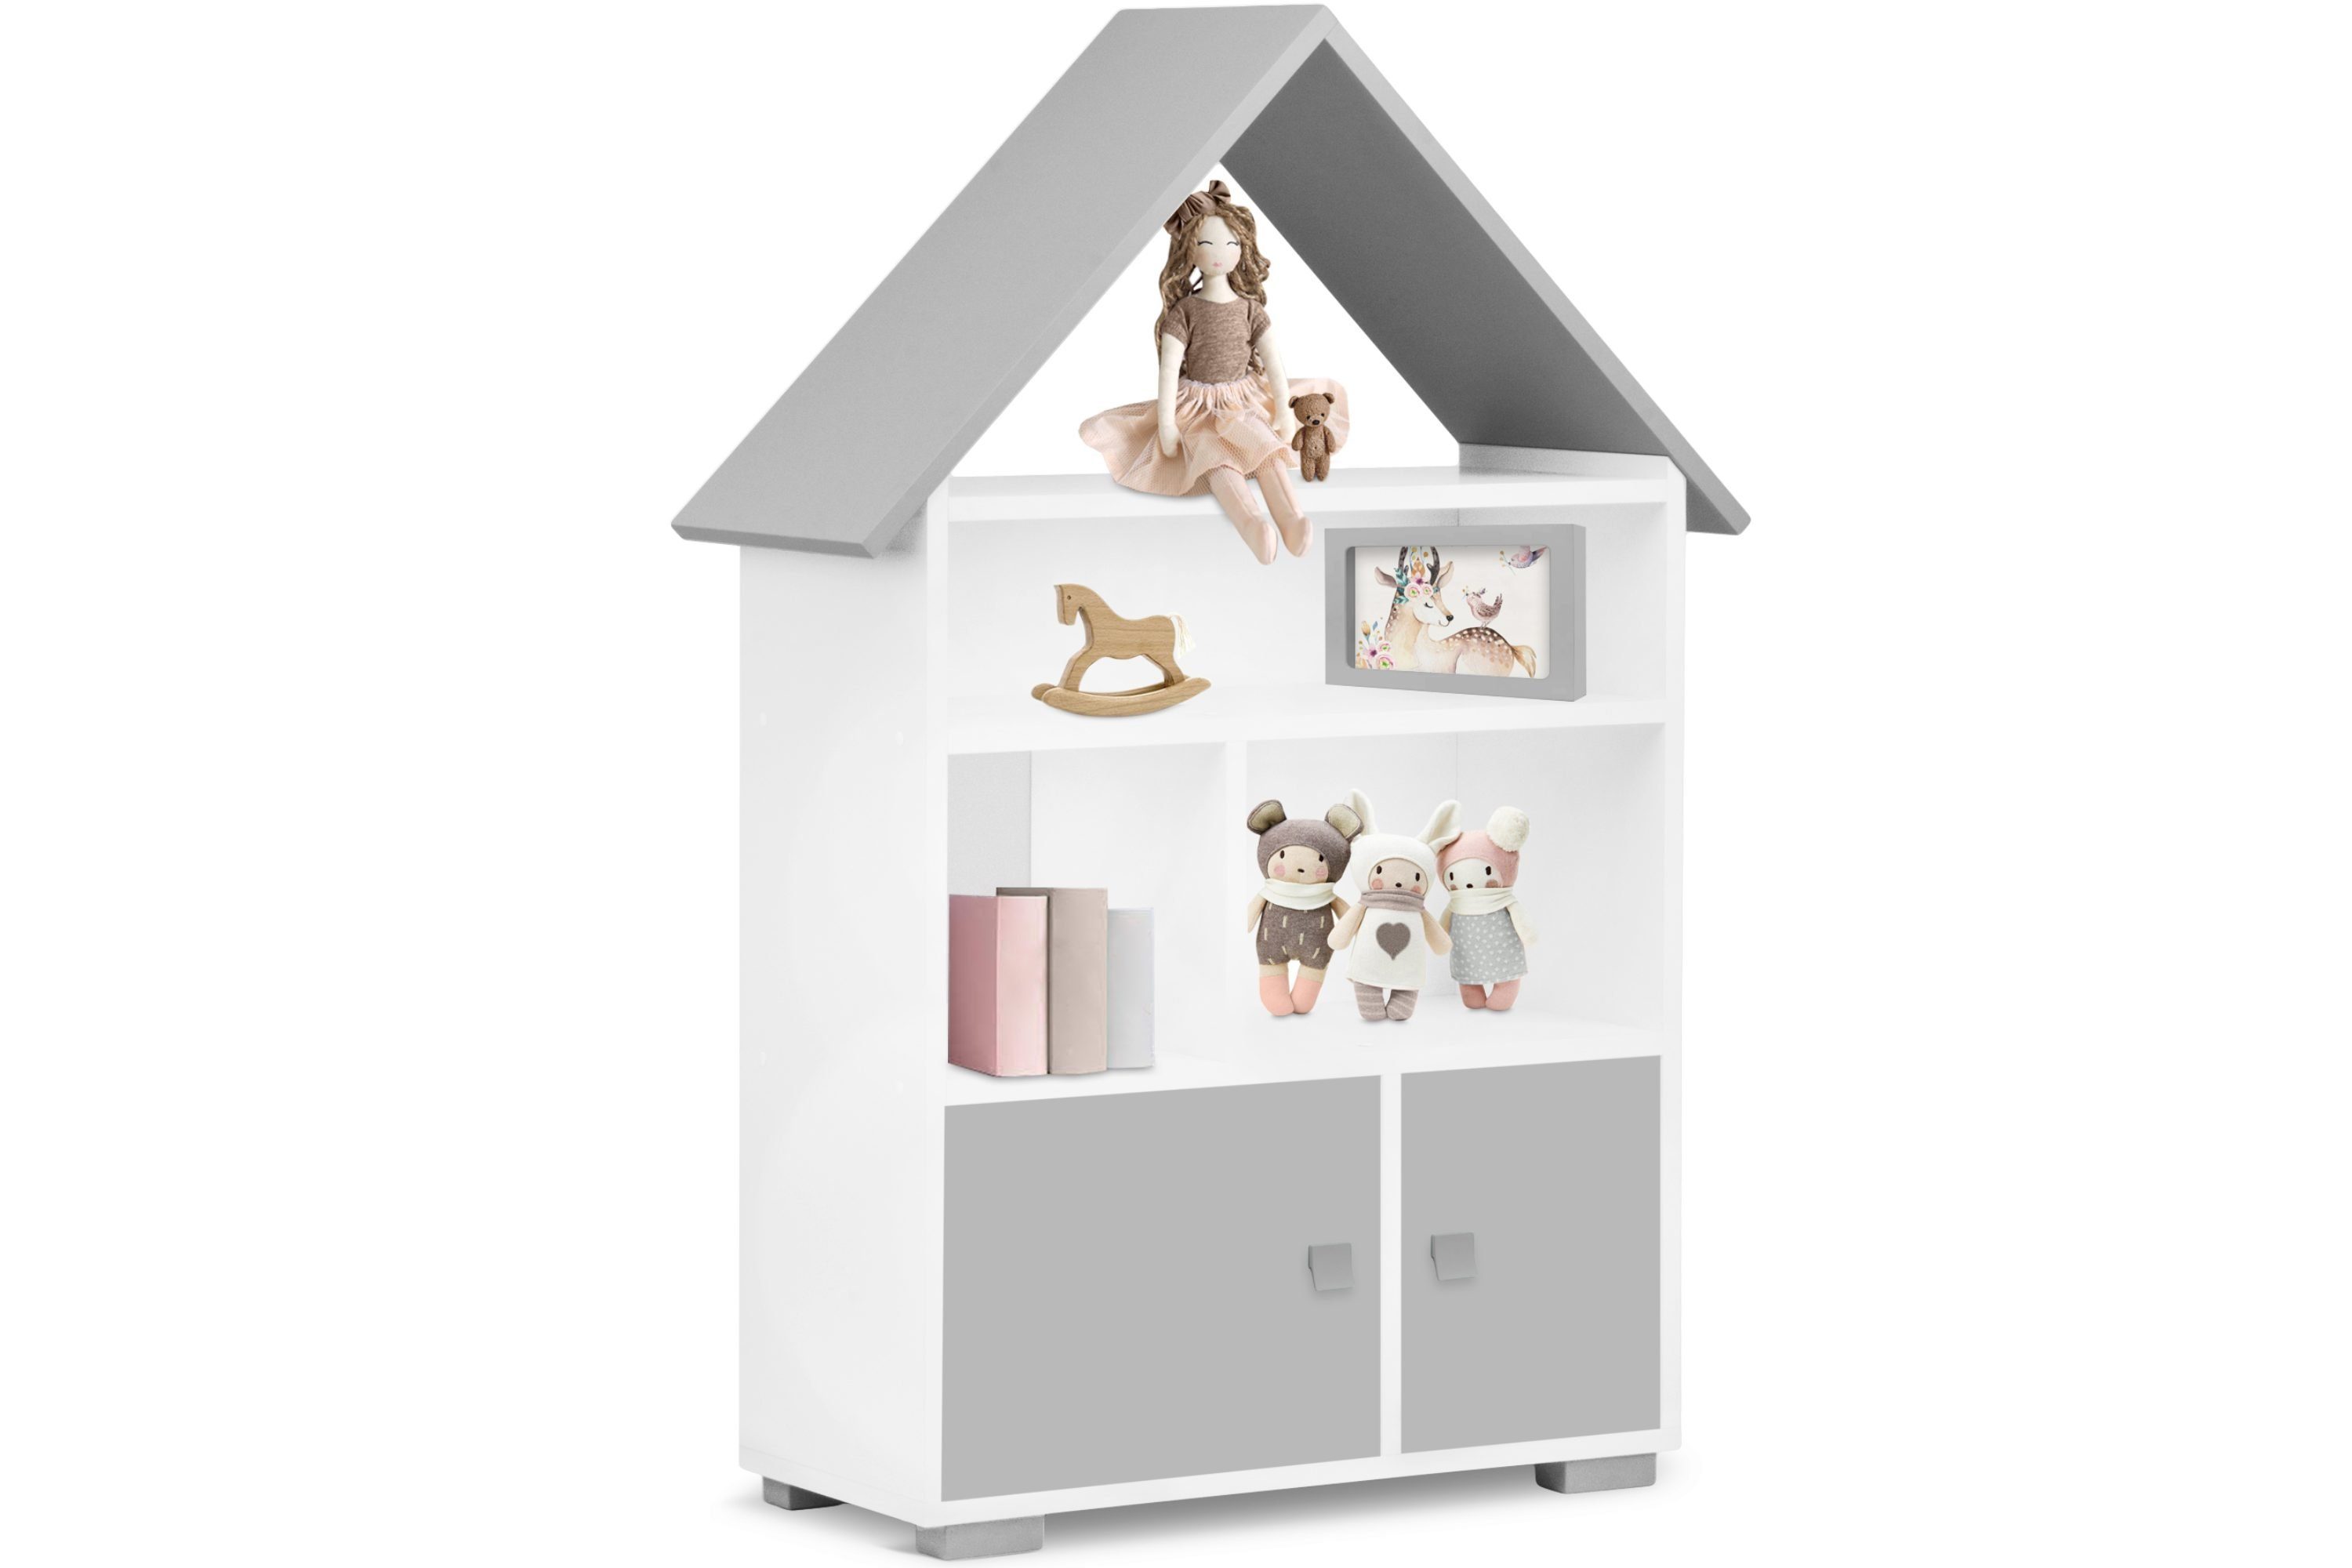 PABIS, in weiß/grau Türen Pastellfarben Bücherregal Kinderregal Hausform, Konsimo Bücherregal mit Tür, mit